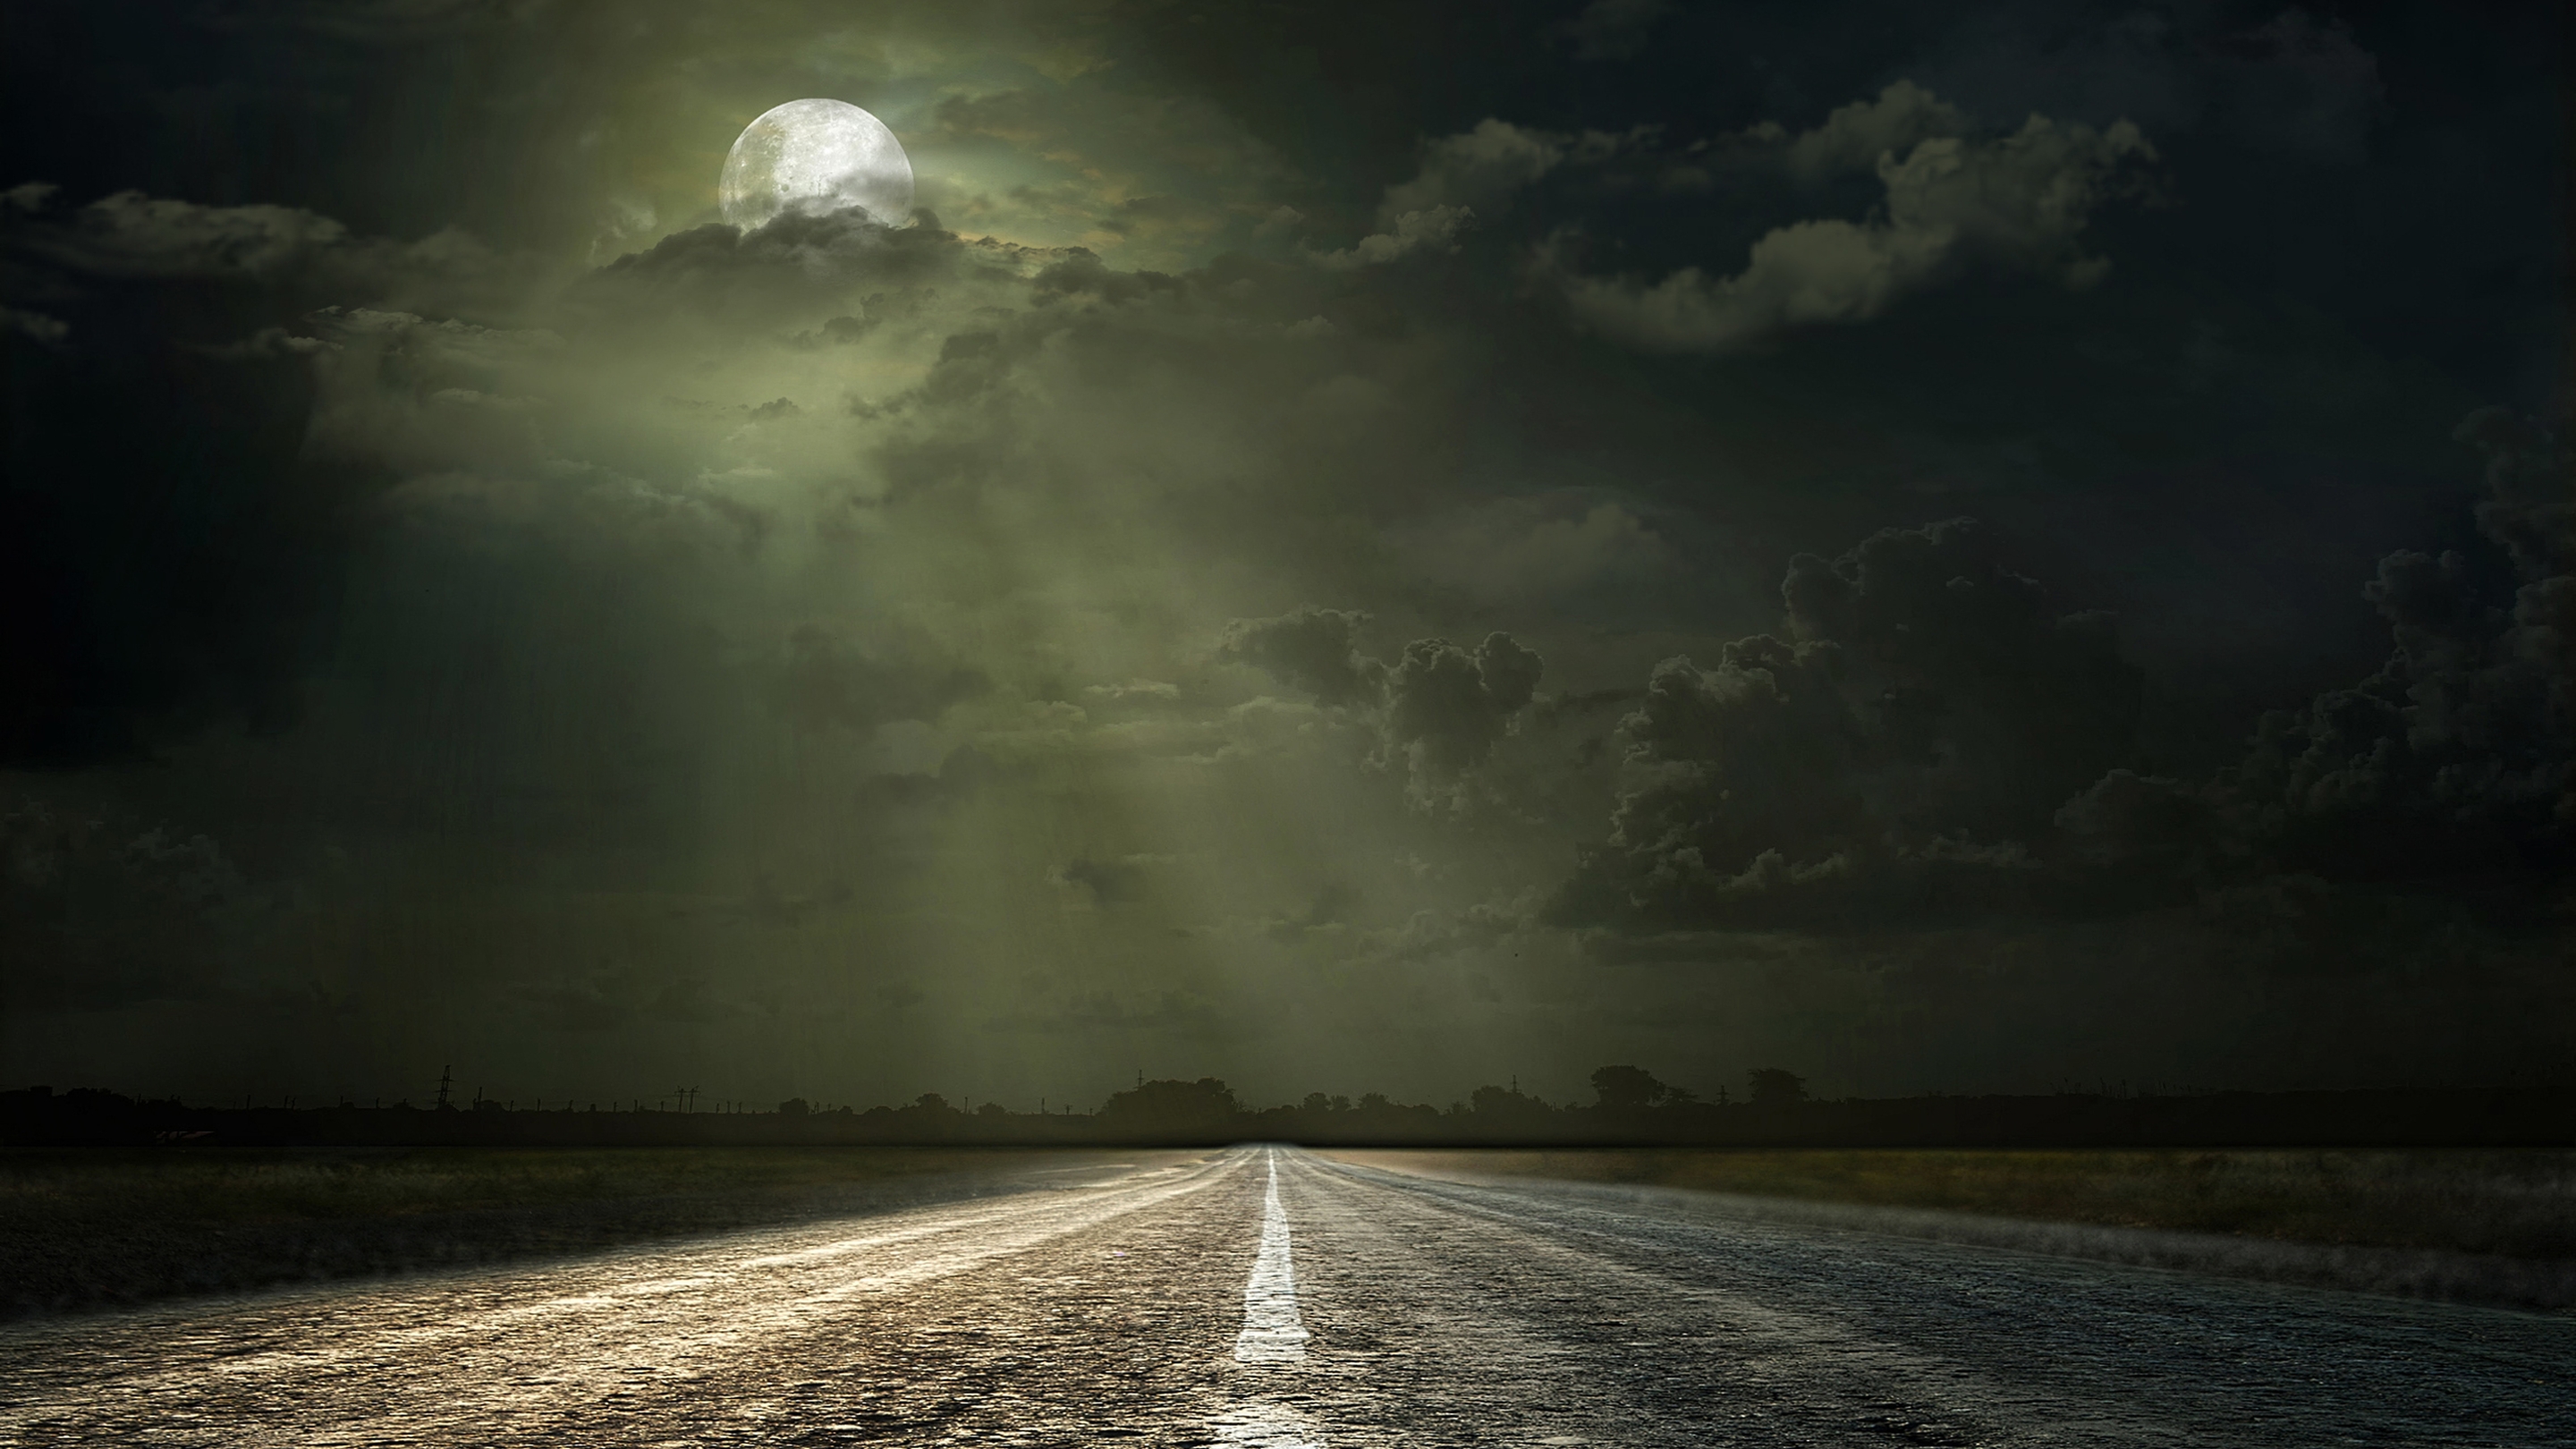 Картинка: Пейзаж, дорога, ночь, даль, лунный свет, луна, облака, горизонт, ночное небо